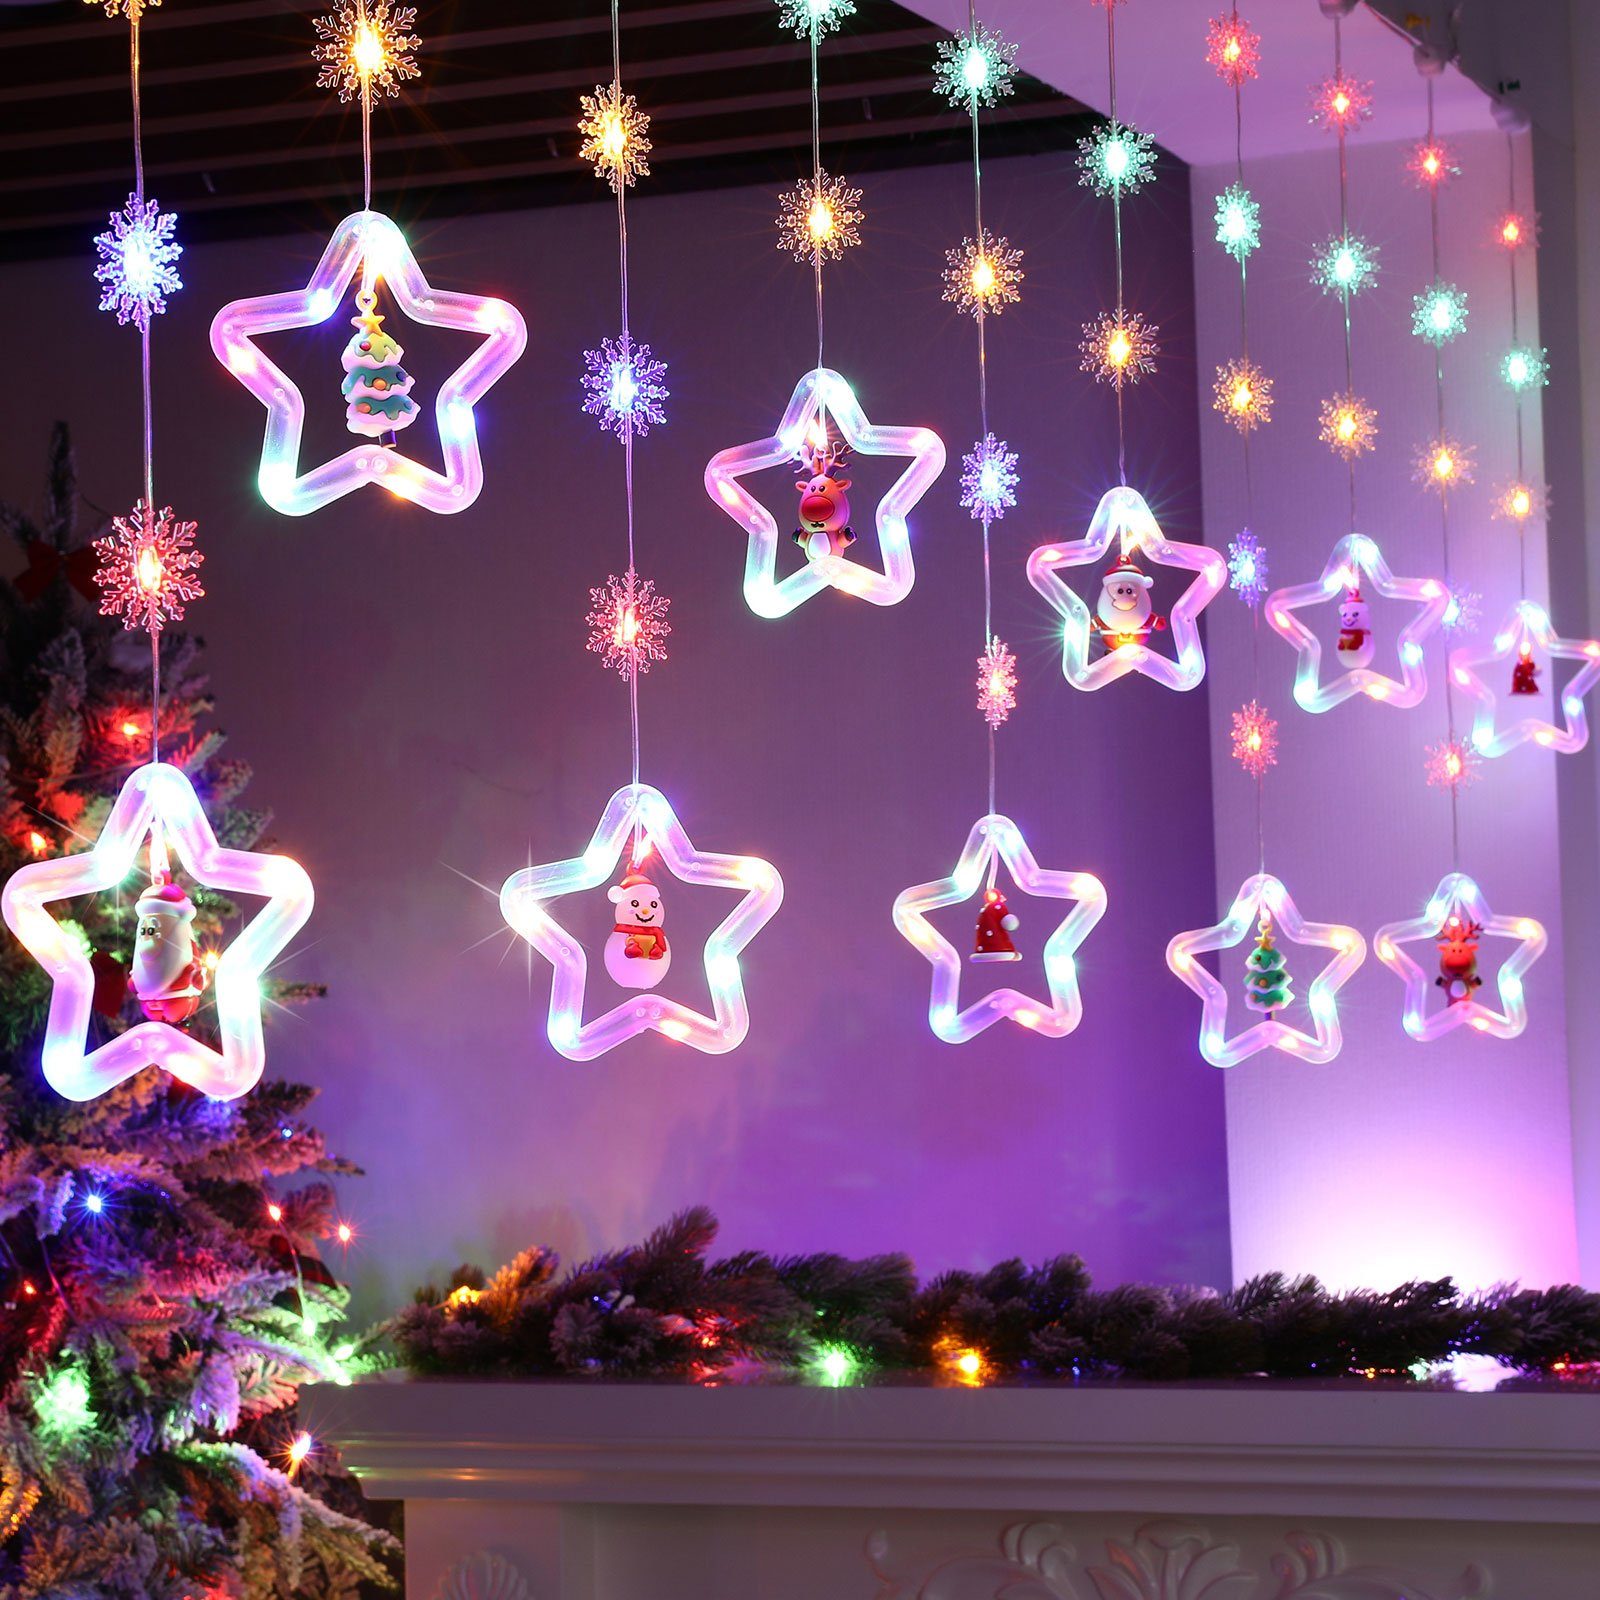 Sunicol LED-Lichterkette 3M Lichtervorhang, Fenster Party Weihnachtsdeko, USB/Batterie 8 Modi, Schneeflocken Sterne Xmas LED Lichterketten mit Fernsteuerung Timer RGB Sterne